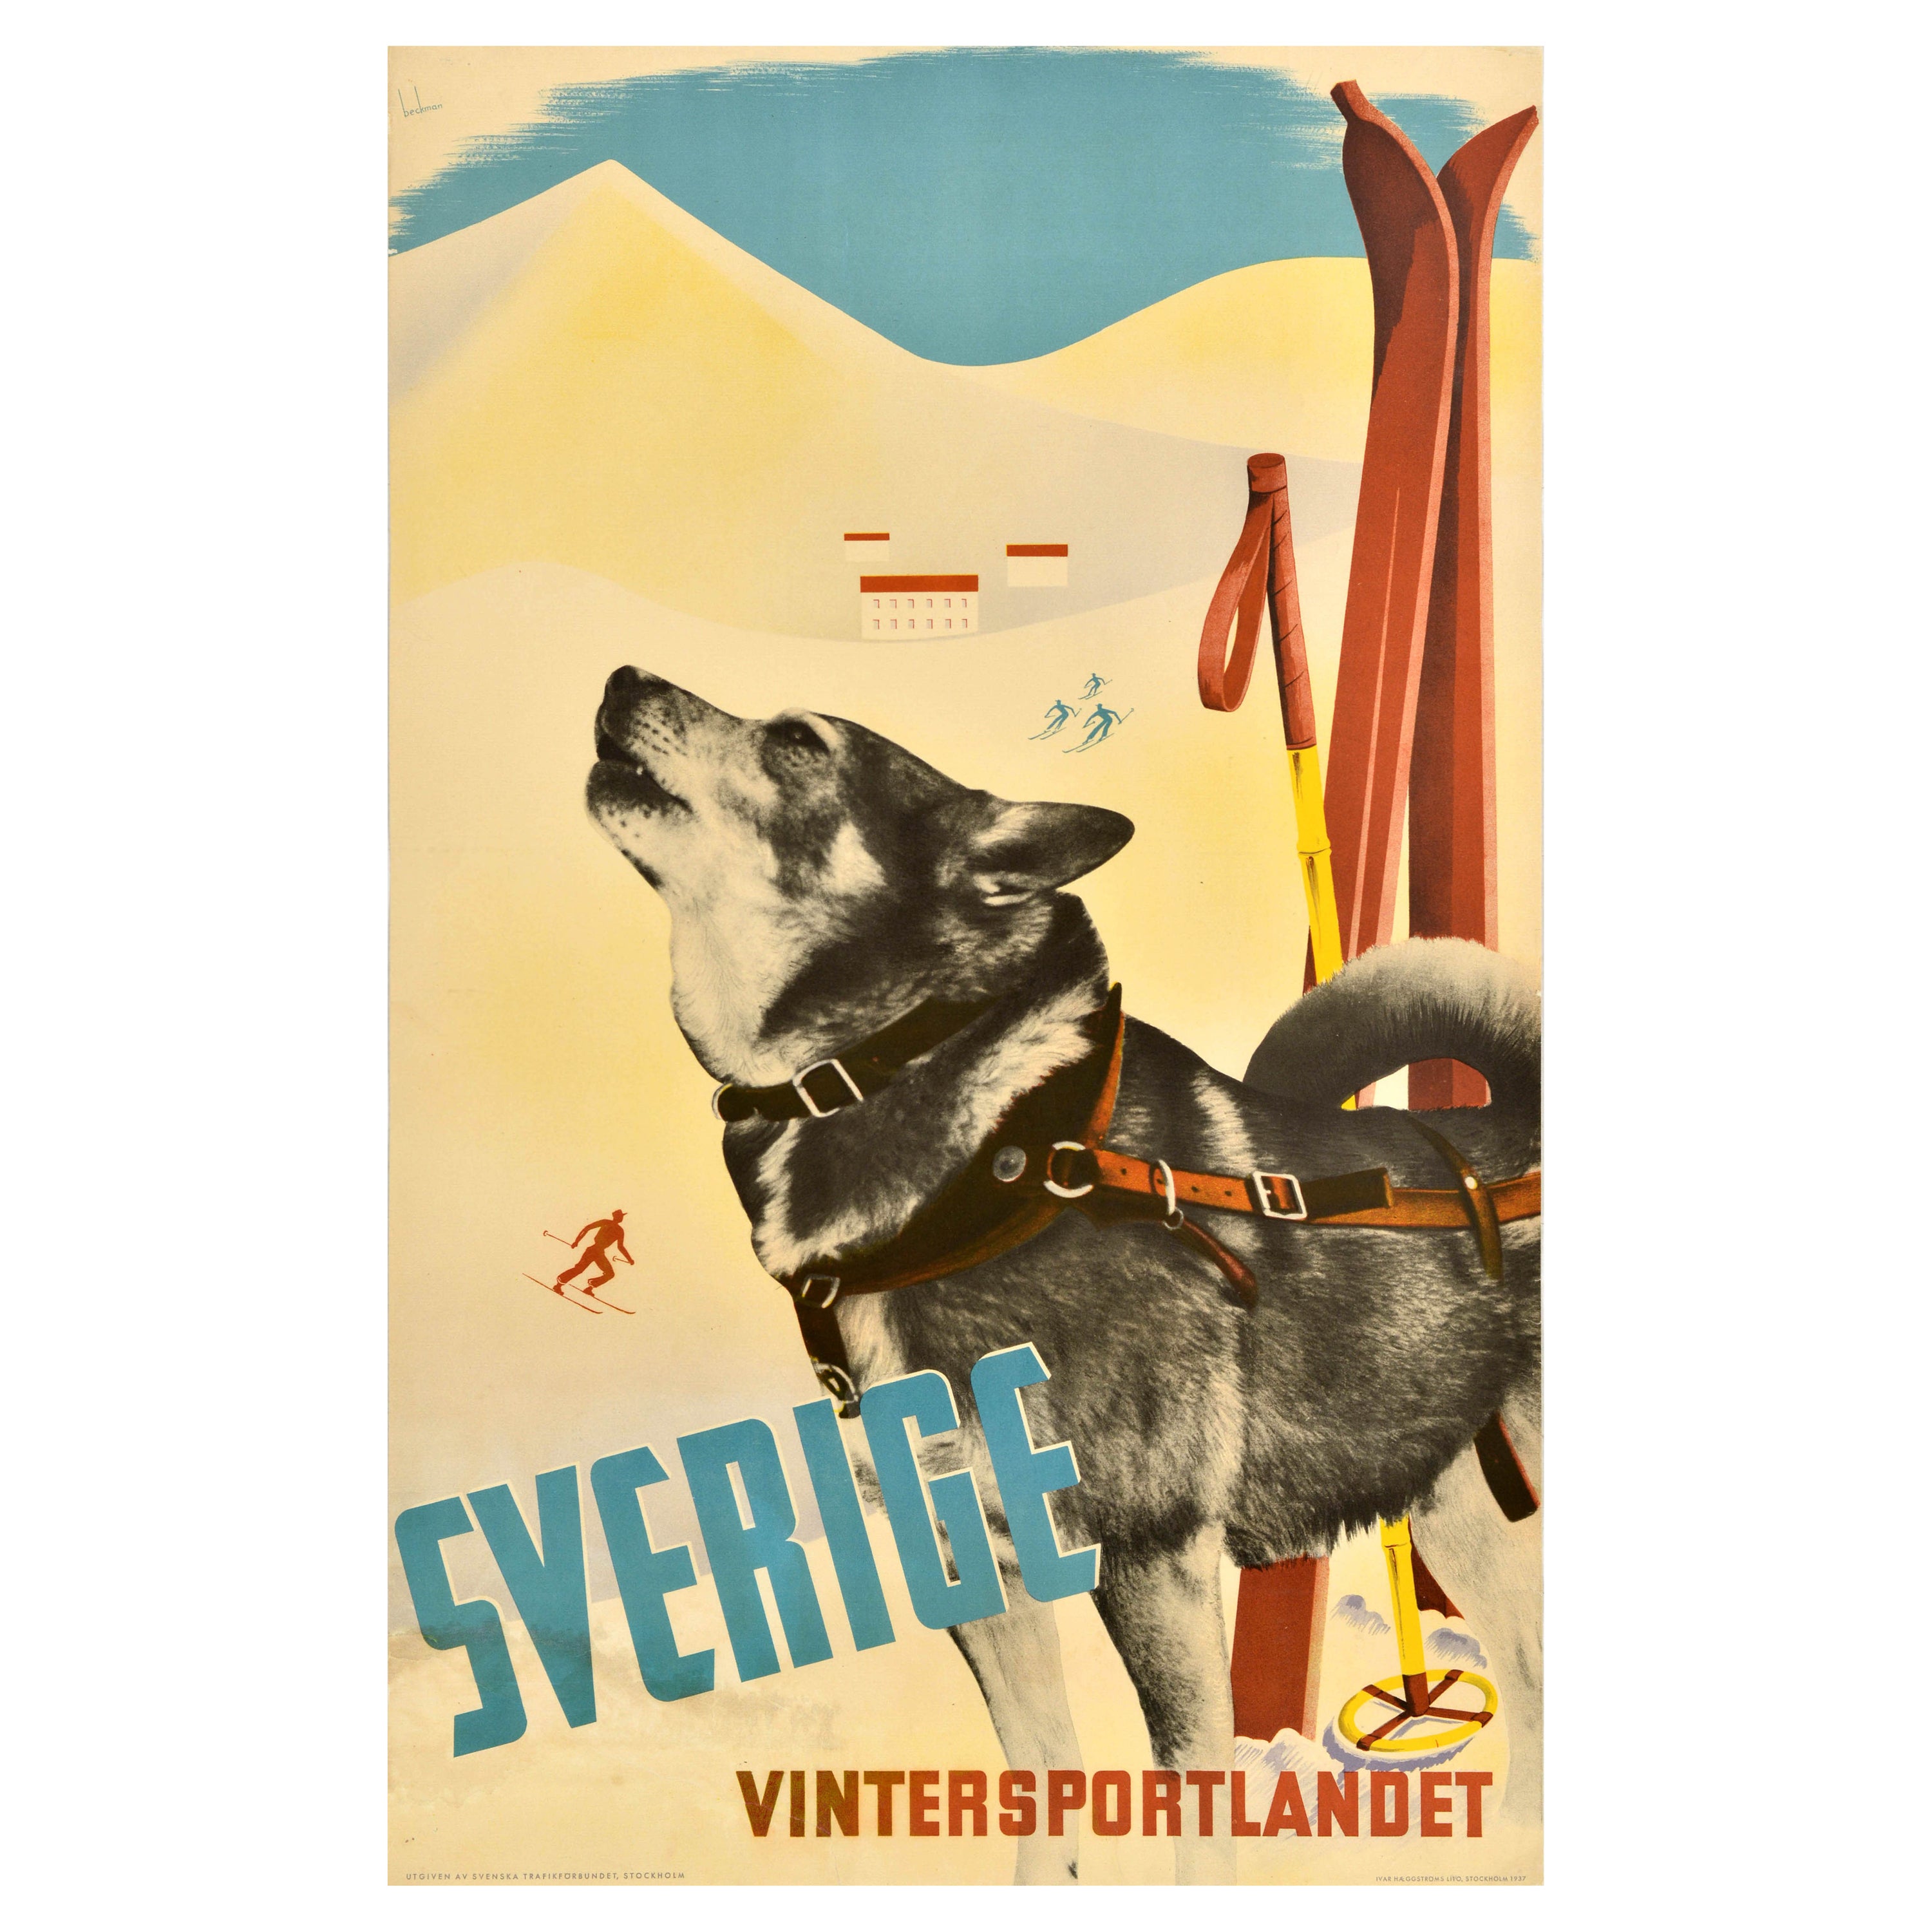 Affiche de ski vintage originale Sverige Vintersportlandet, Suède, chien de sport d'hiver